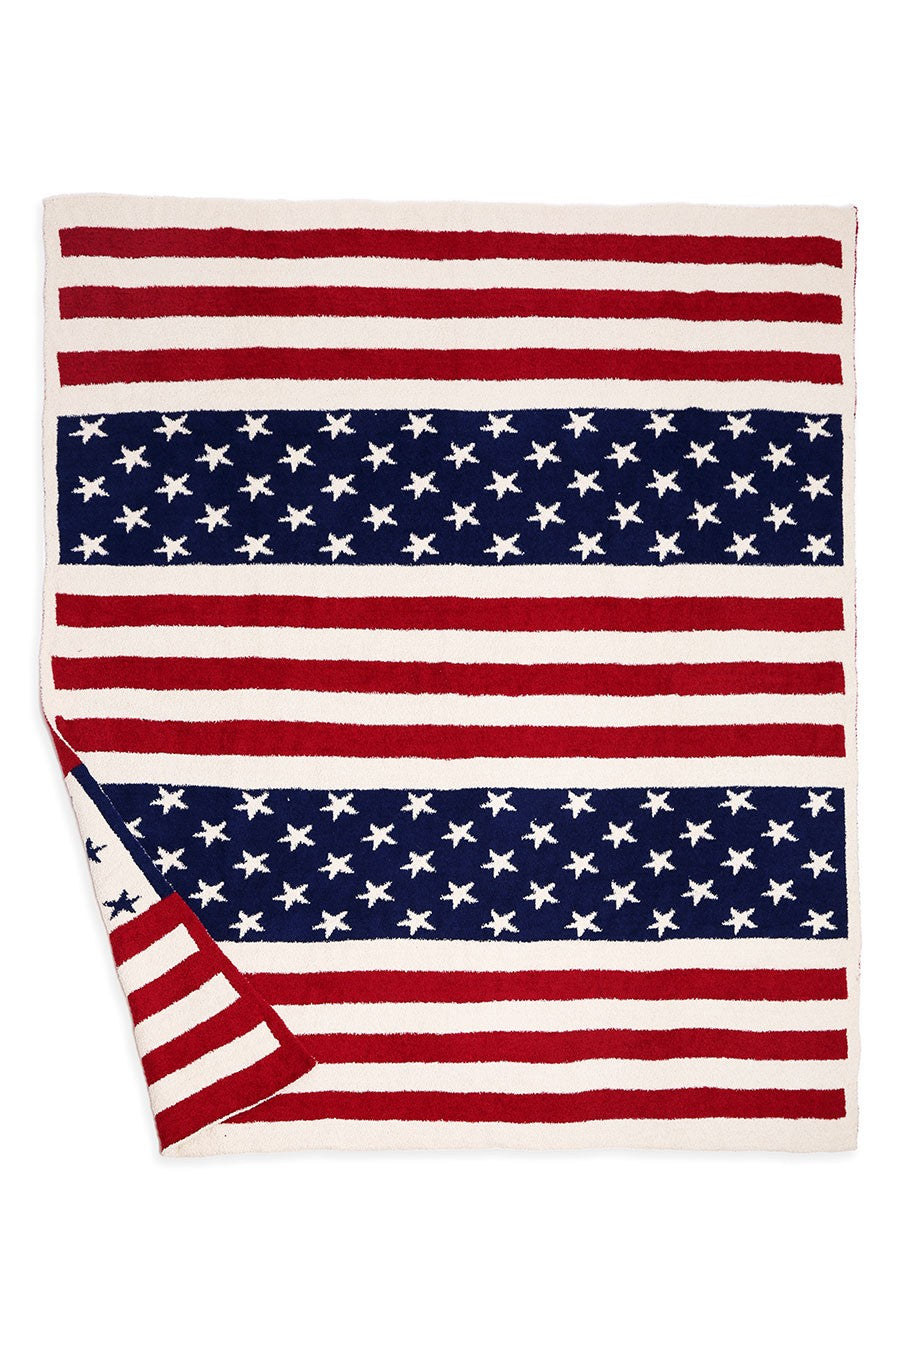 USA USA USA Comfy Luxe Blanket